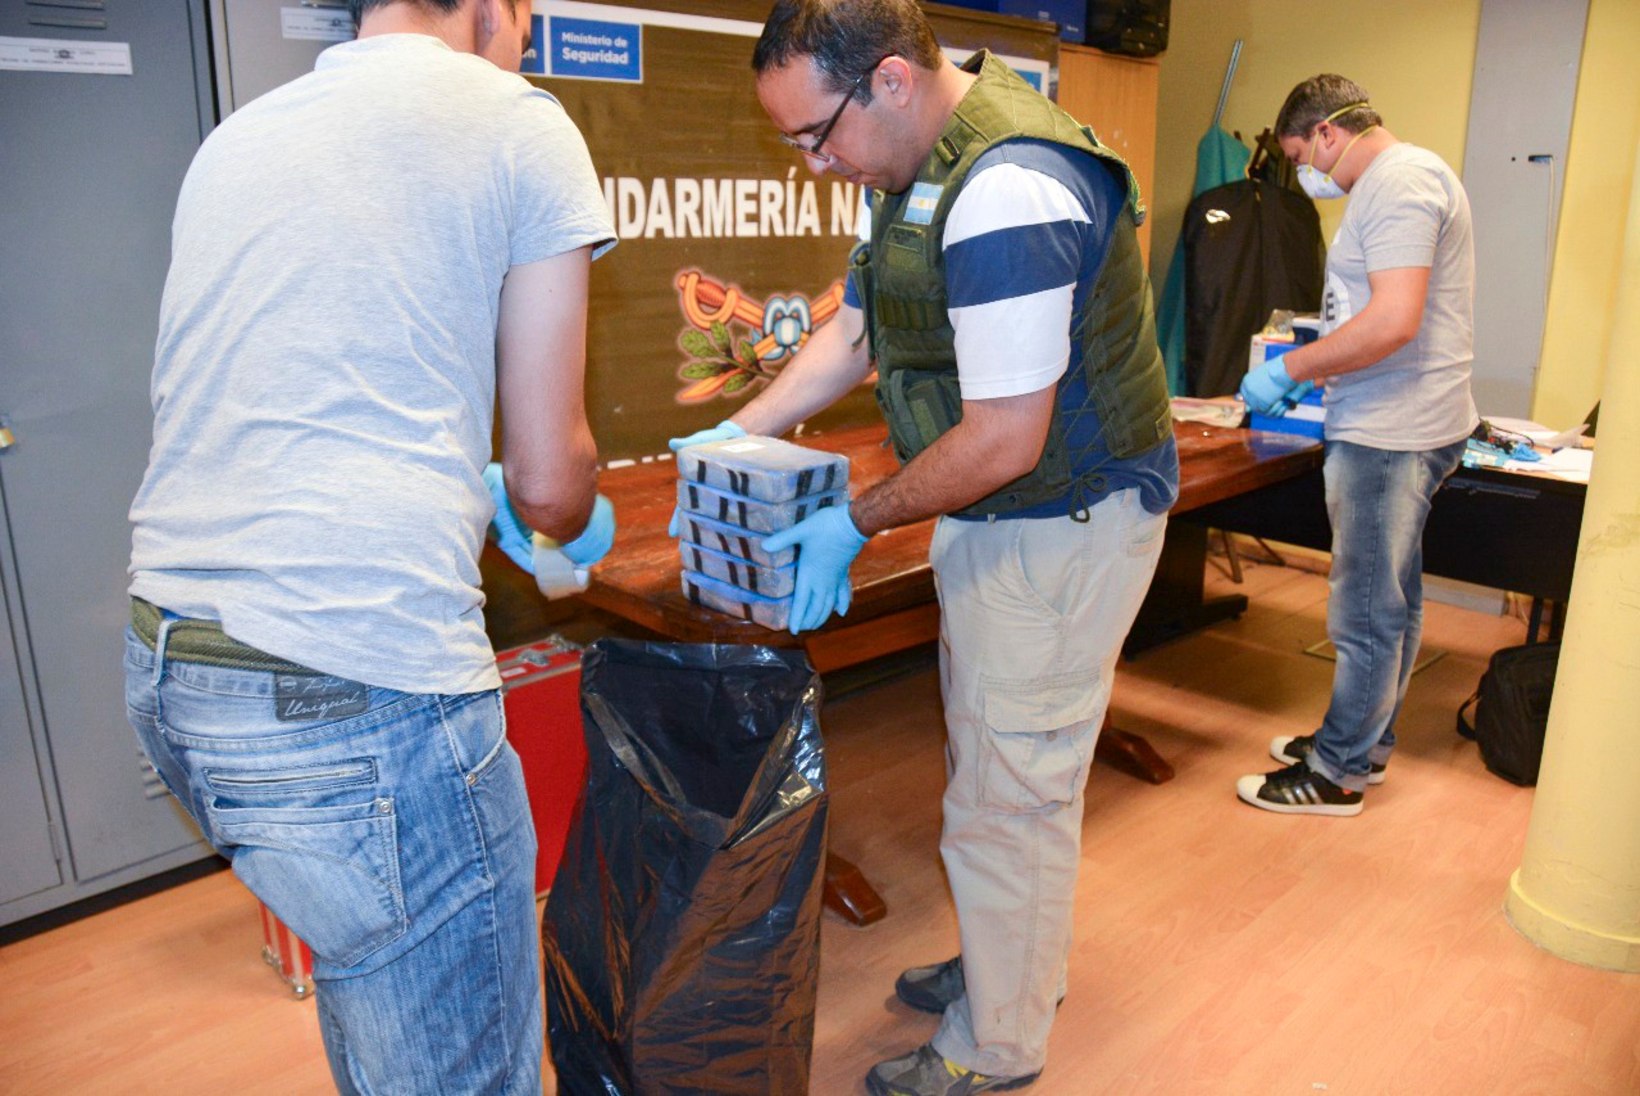 Vene saatkonnas Argentinas vahetati 389 kilo kokaiini jahuga ära